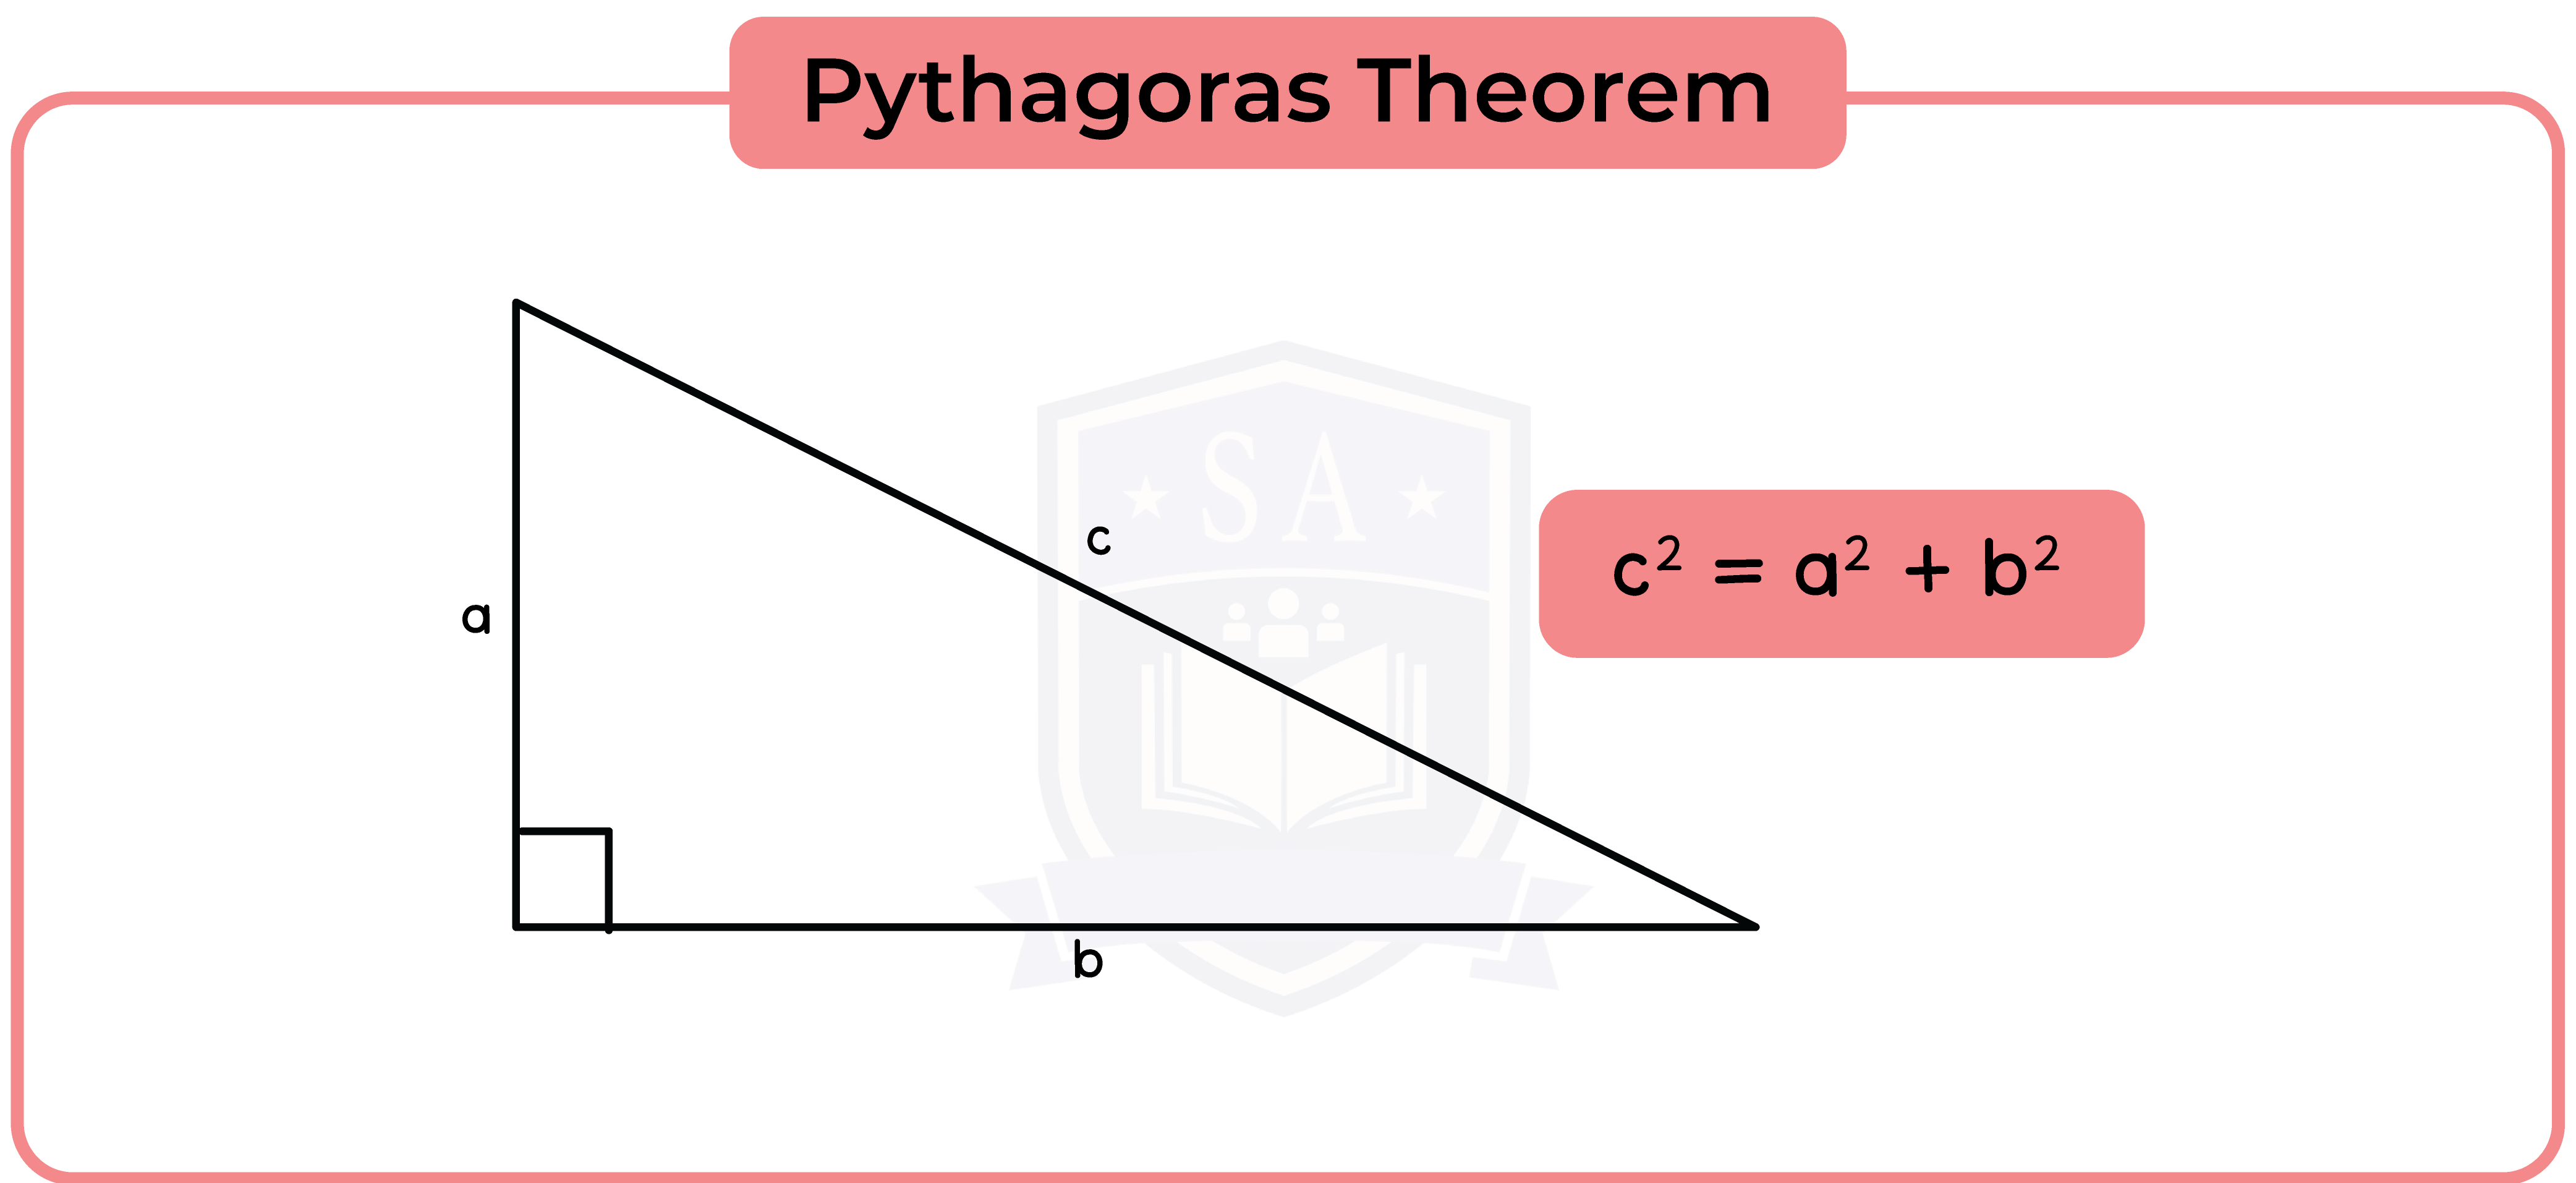 edexcel_igcse_mathematics a_topic 32_trigonomentry and pythagoras' theorem_001_Pythagoras Theorem